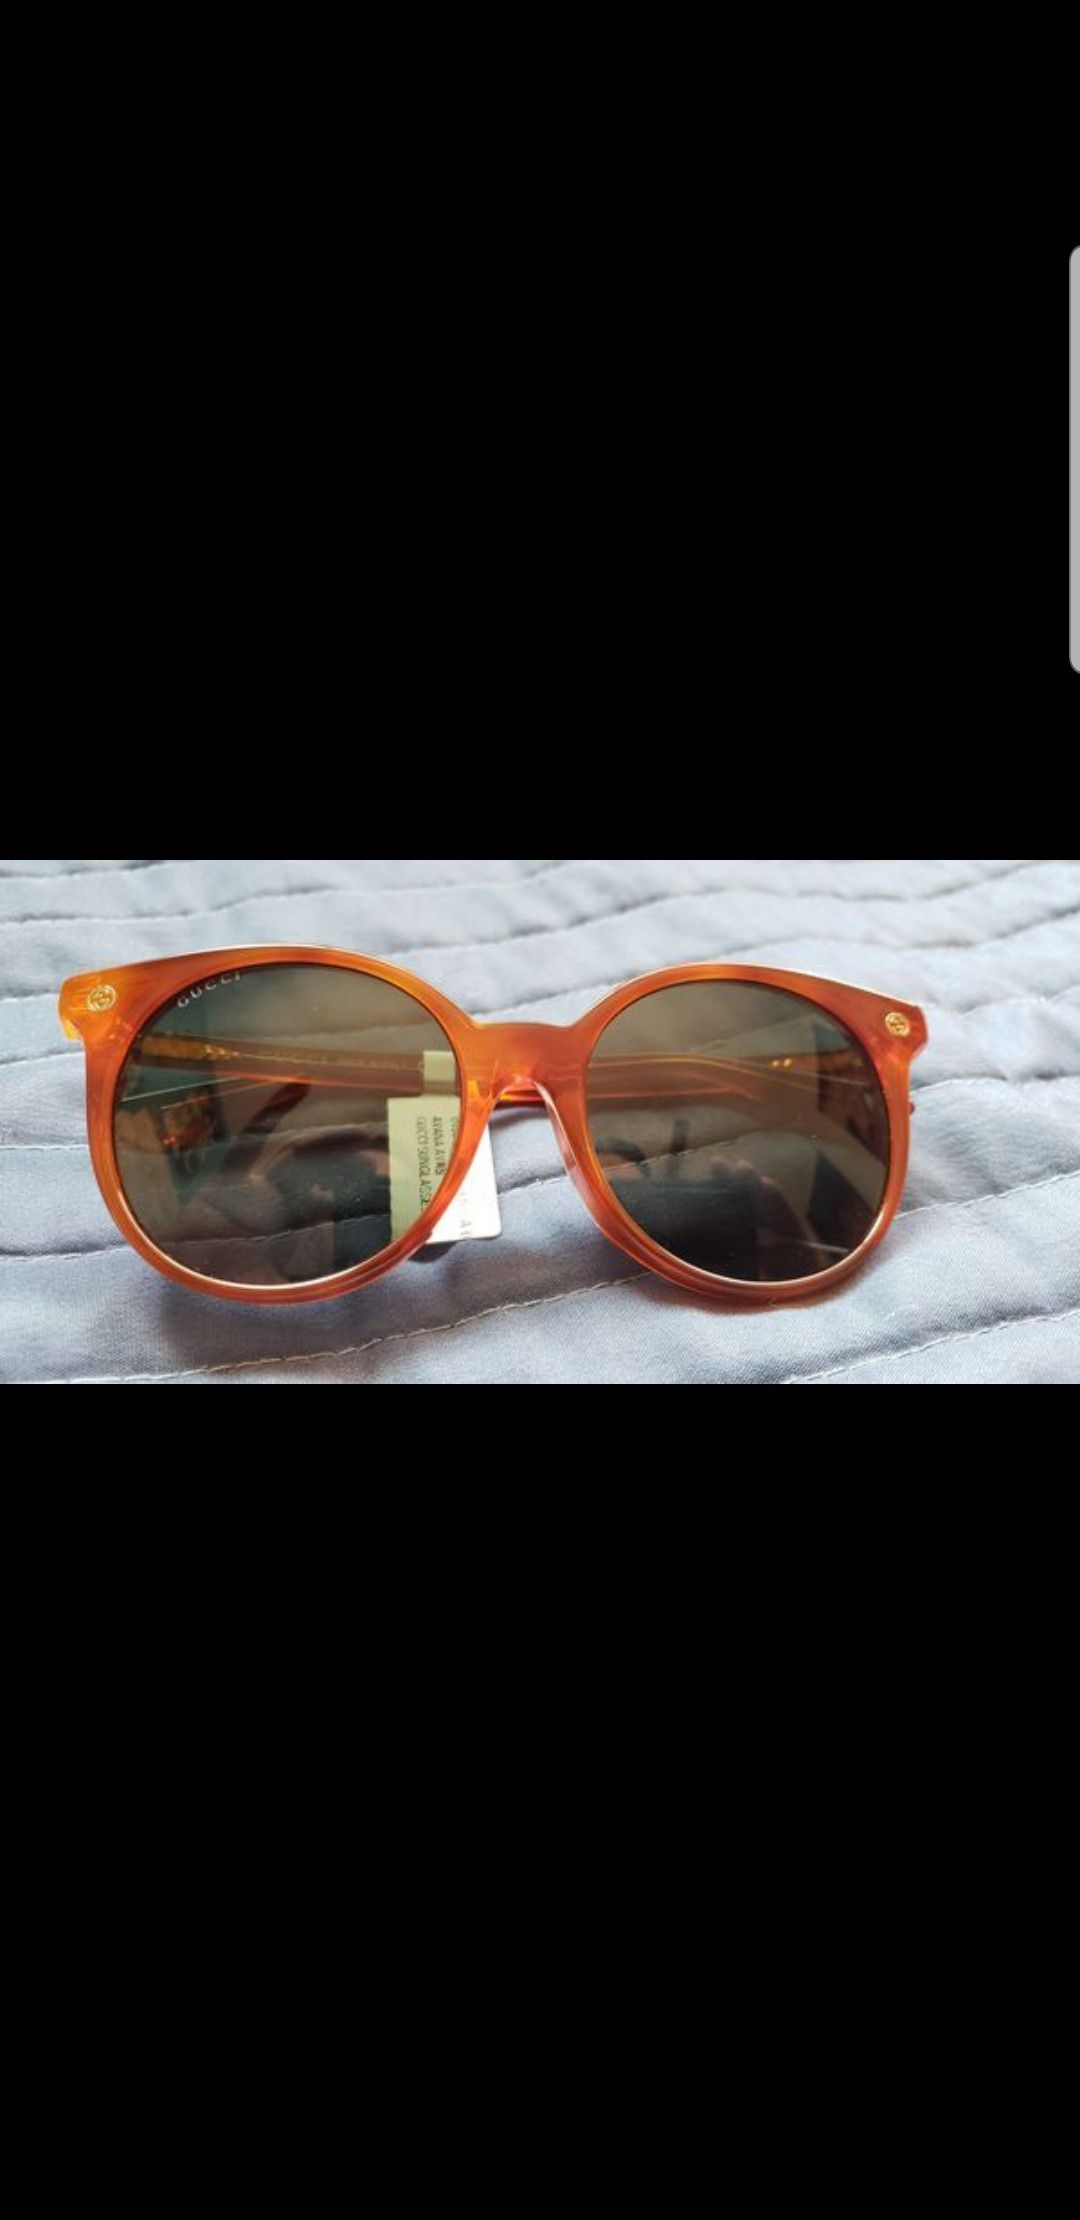 Gucci fame sunglasses